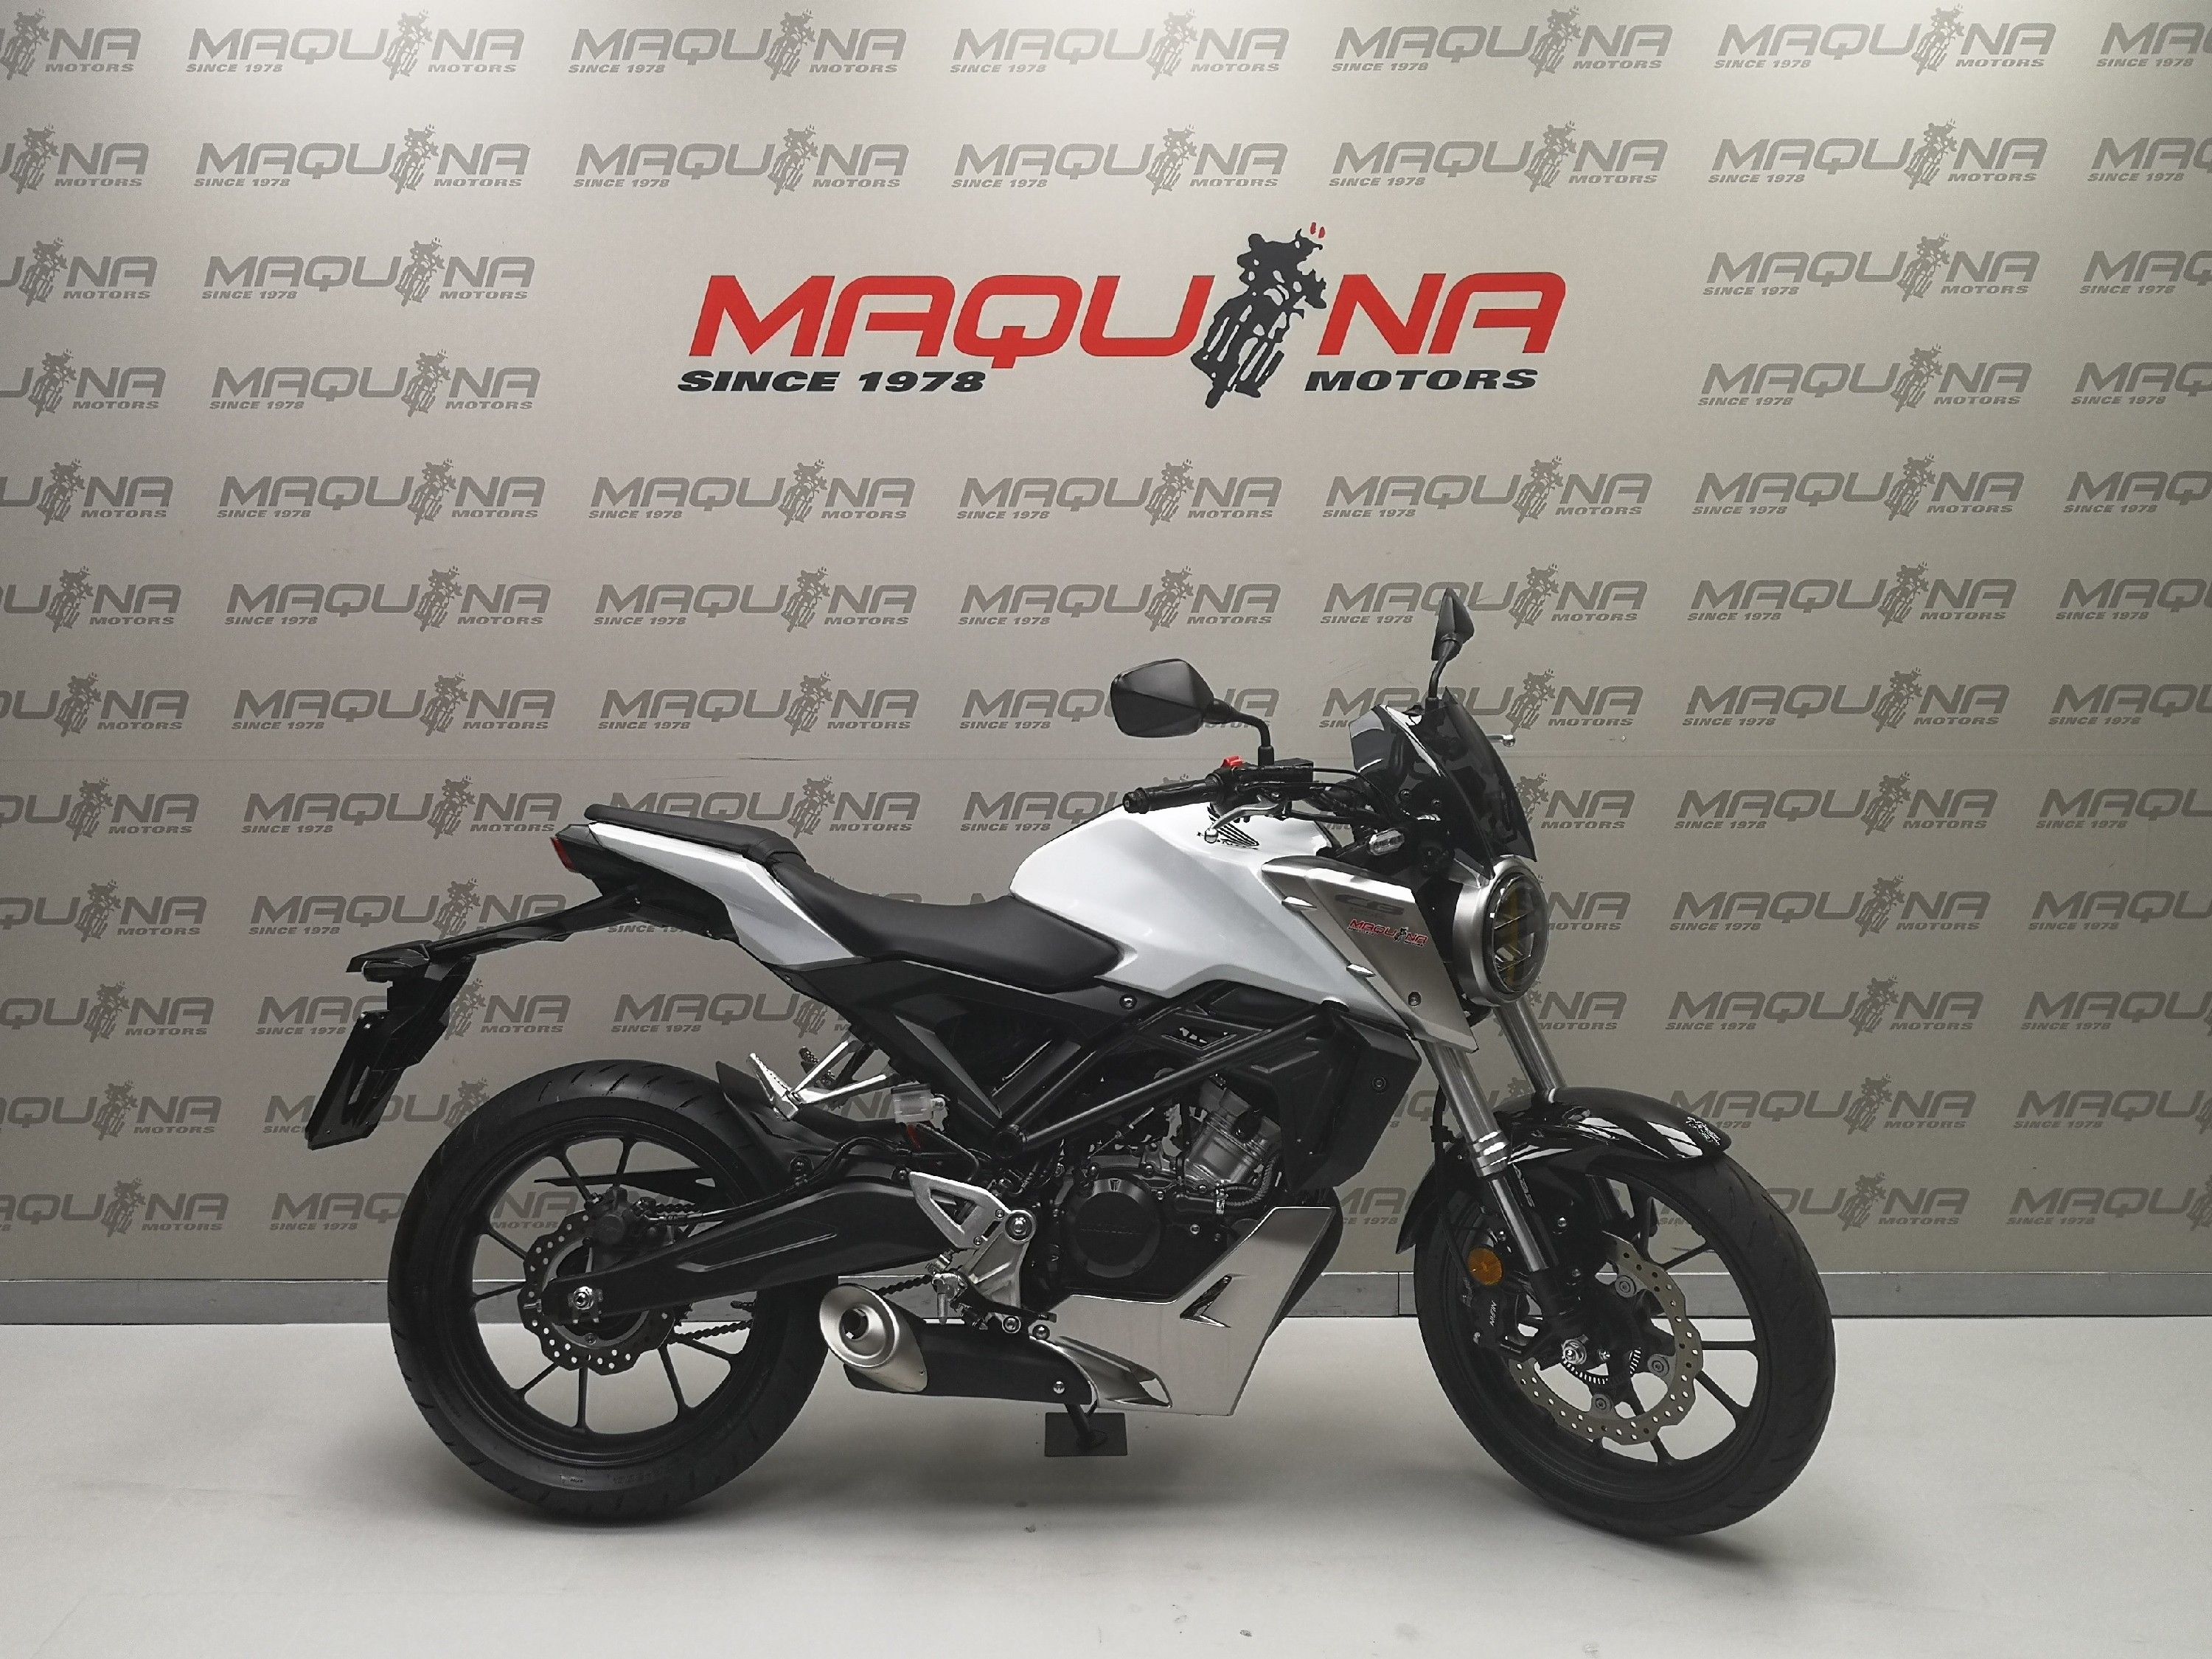 HONDA CB 125 R Maquina Motors motos